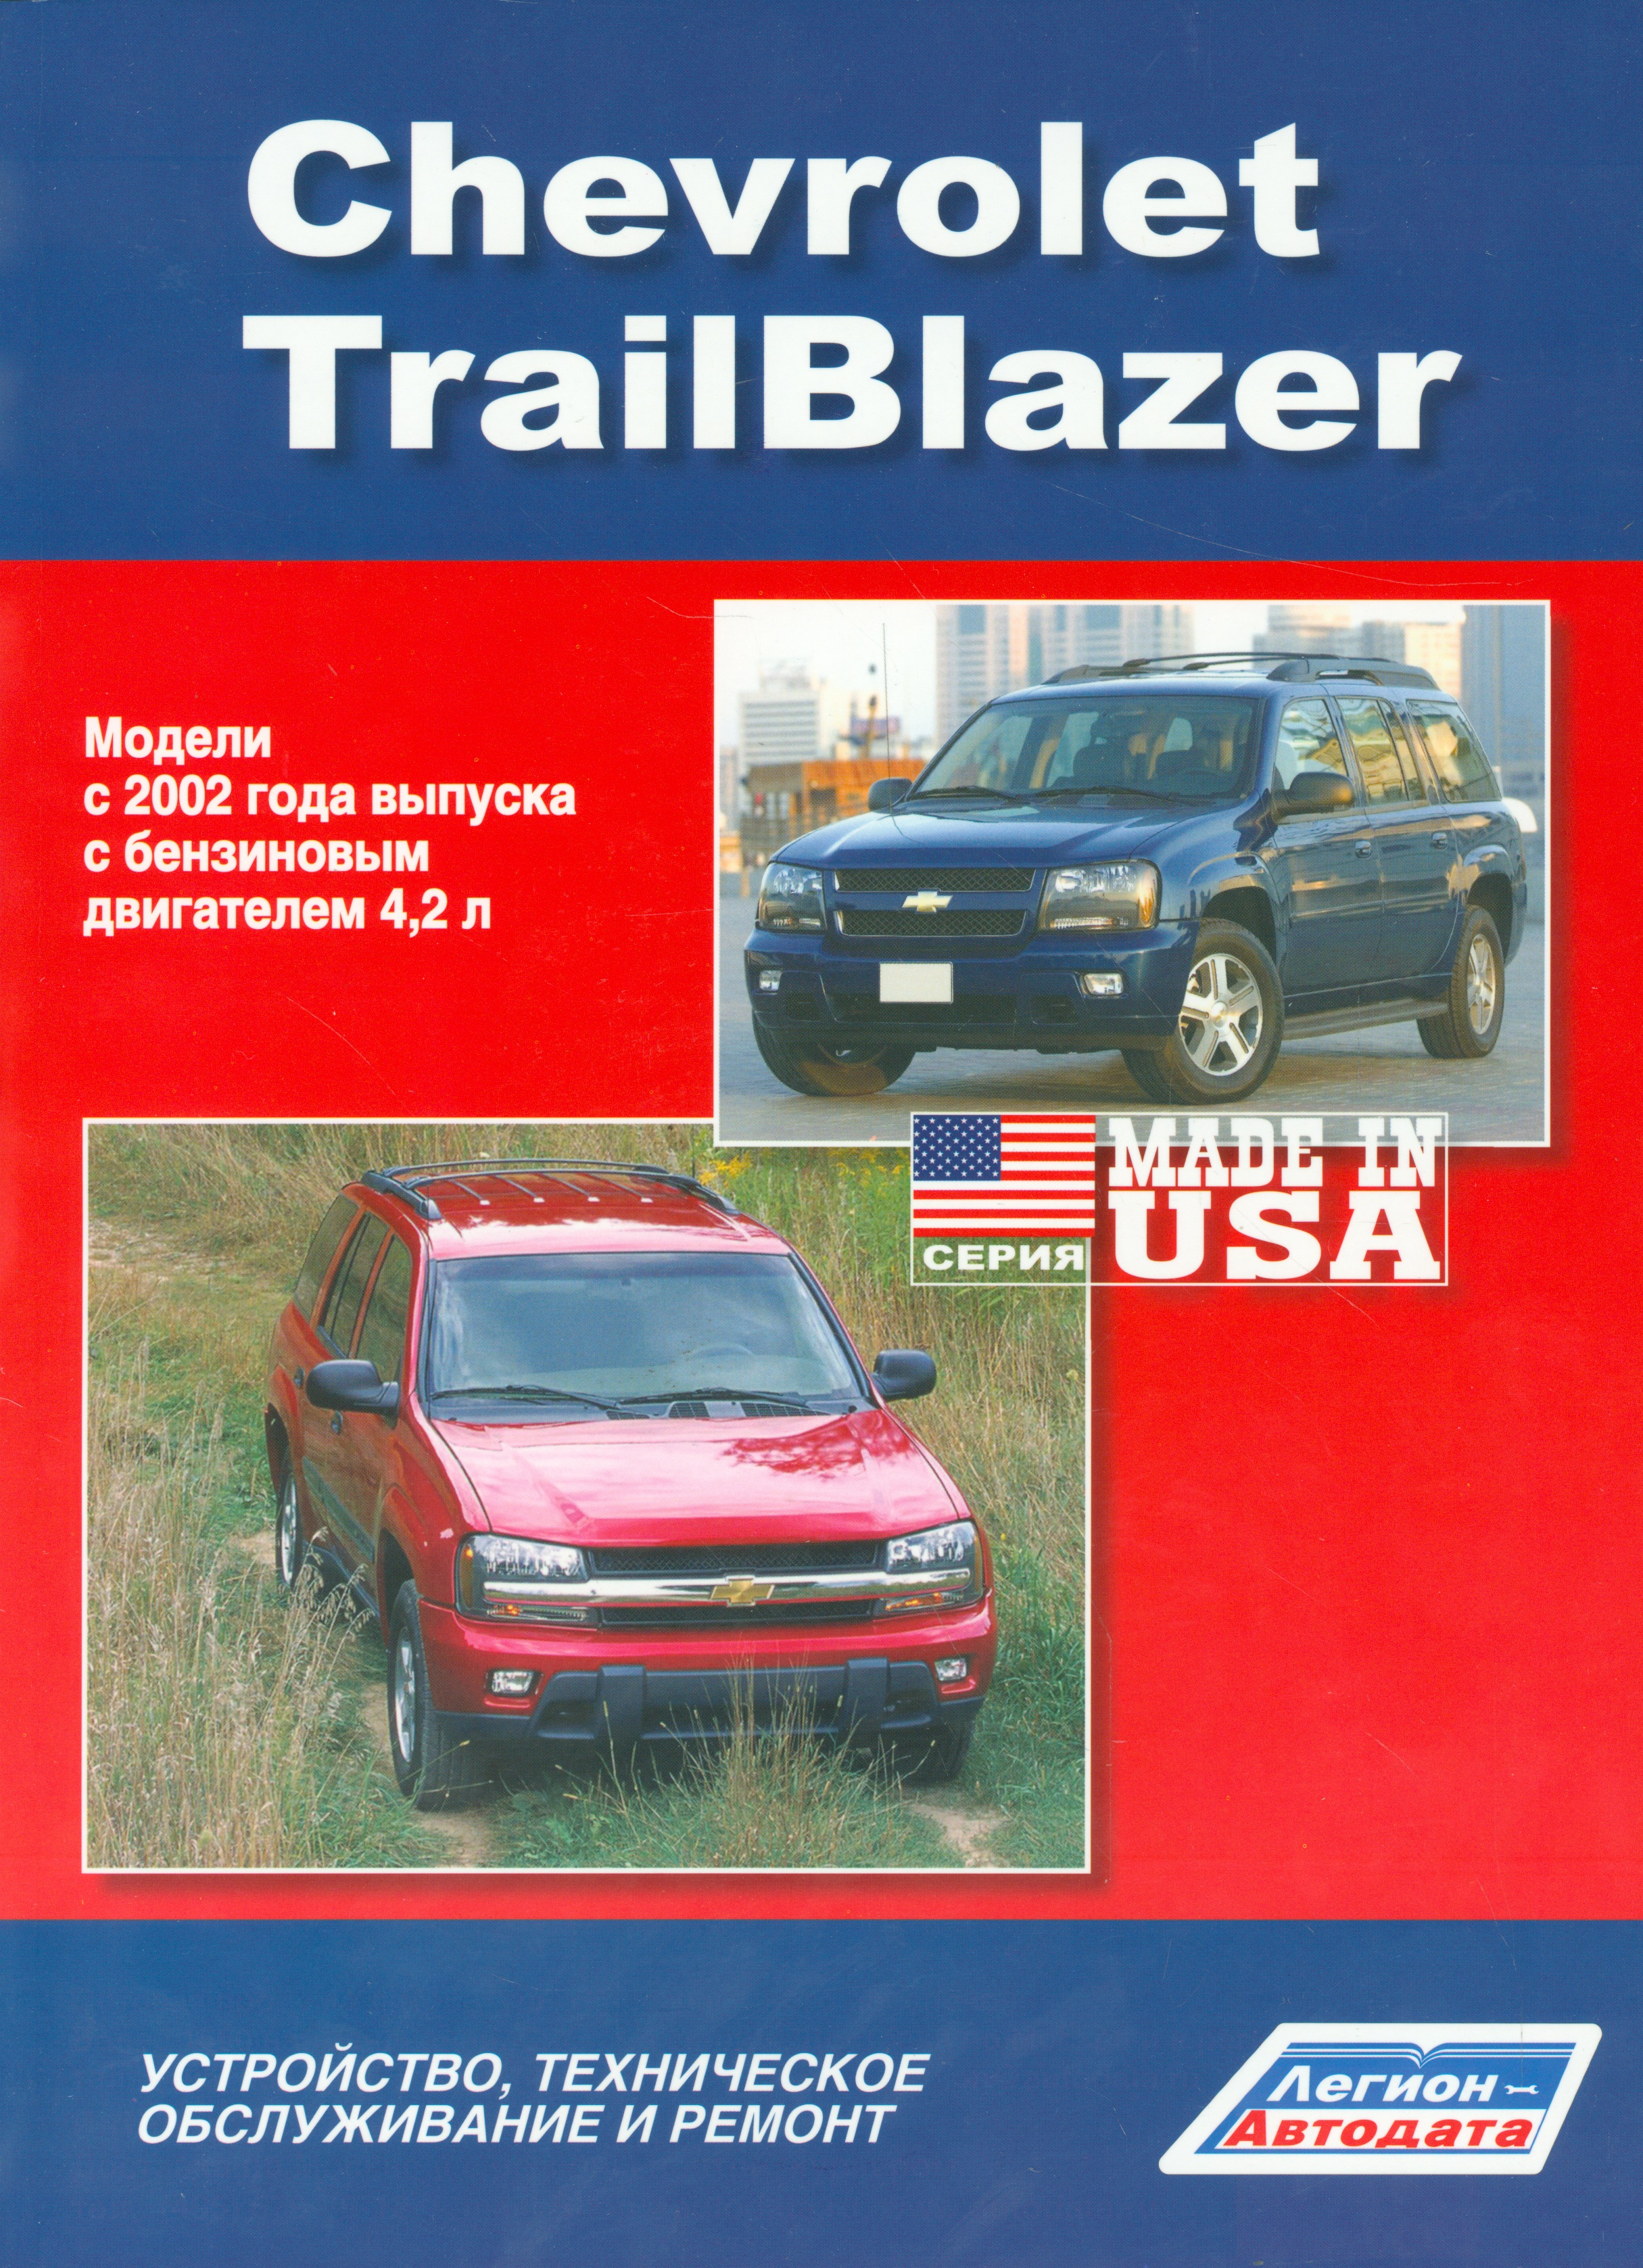 Chevrolet TrailBlazer. Модели с 2002 года выпуска с бензиновым двигателем 4,2 л. Устройство, техническое обслуживание и ремонт nissan patrol модели y62 выпуска с 2010 года с бензиновым двигателем vk56dv устройство техническое обслуживание и ремонт